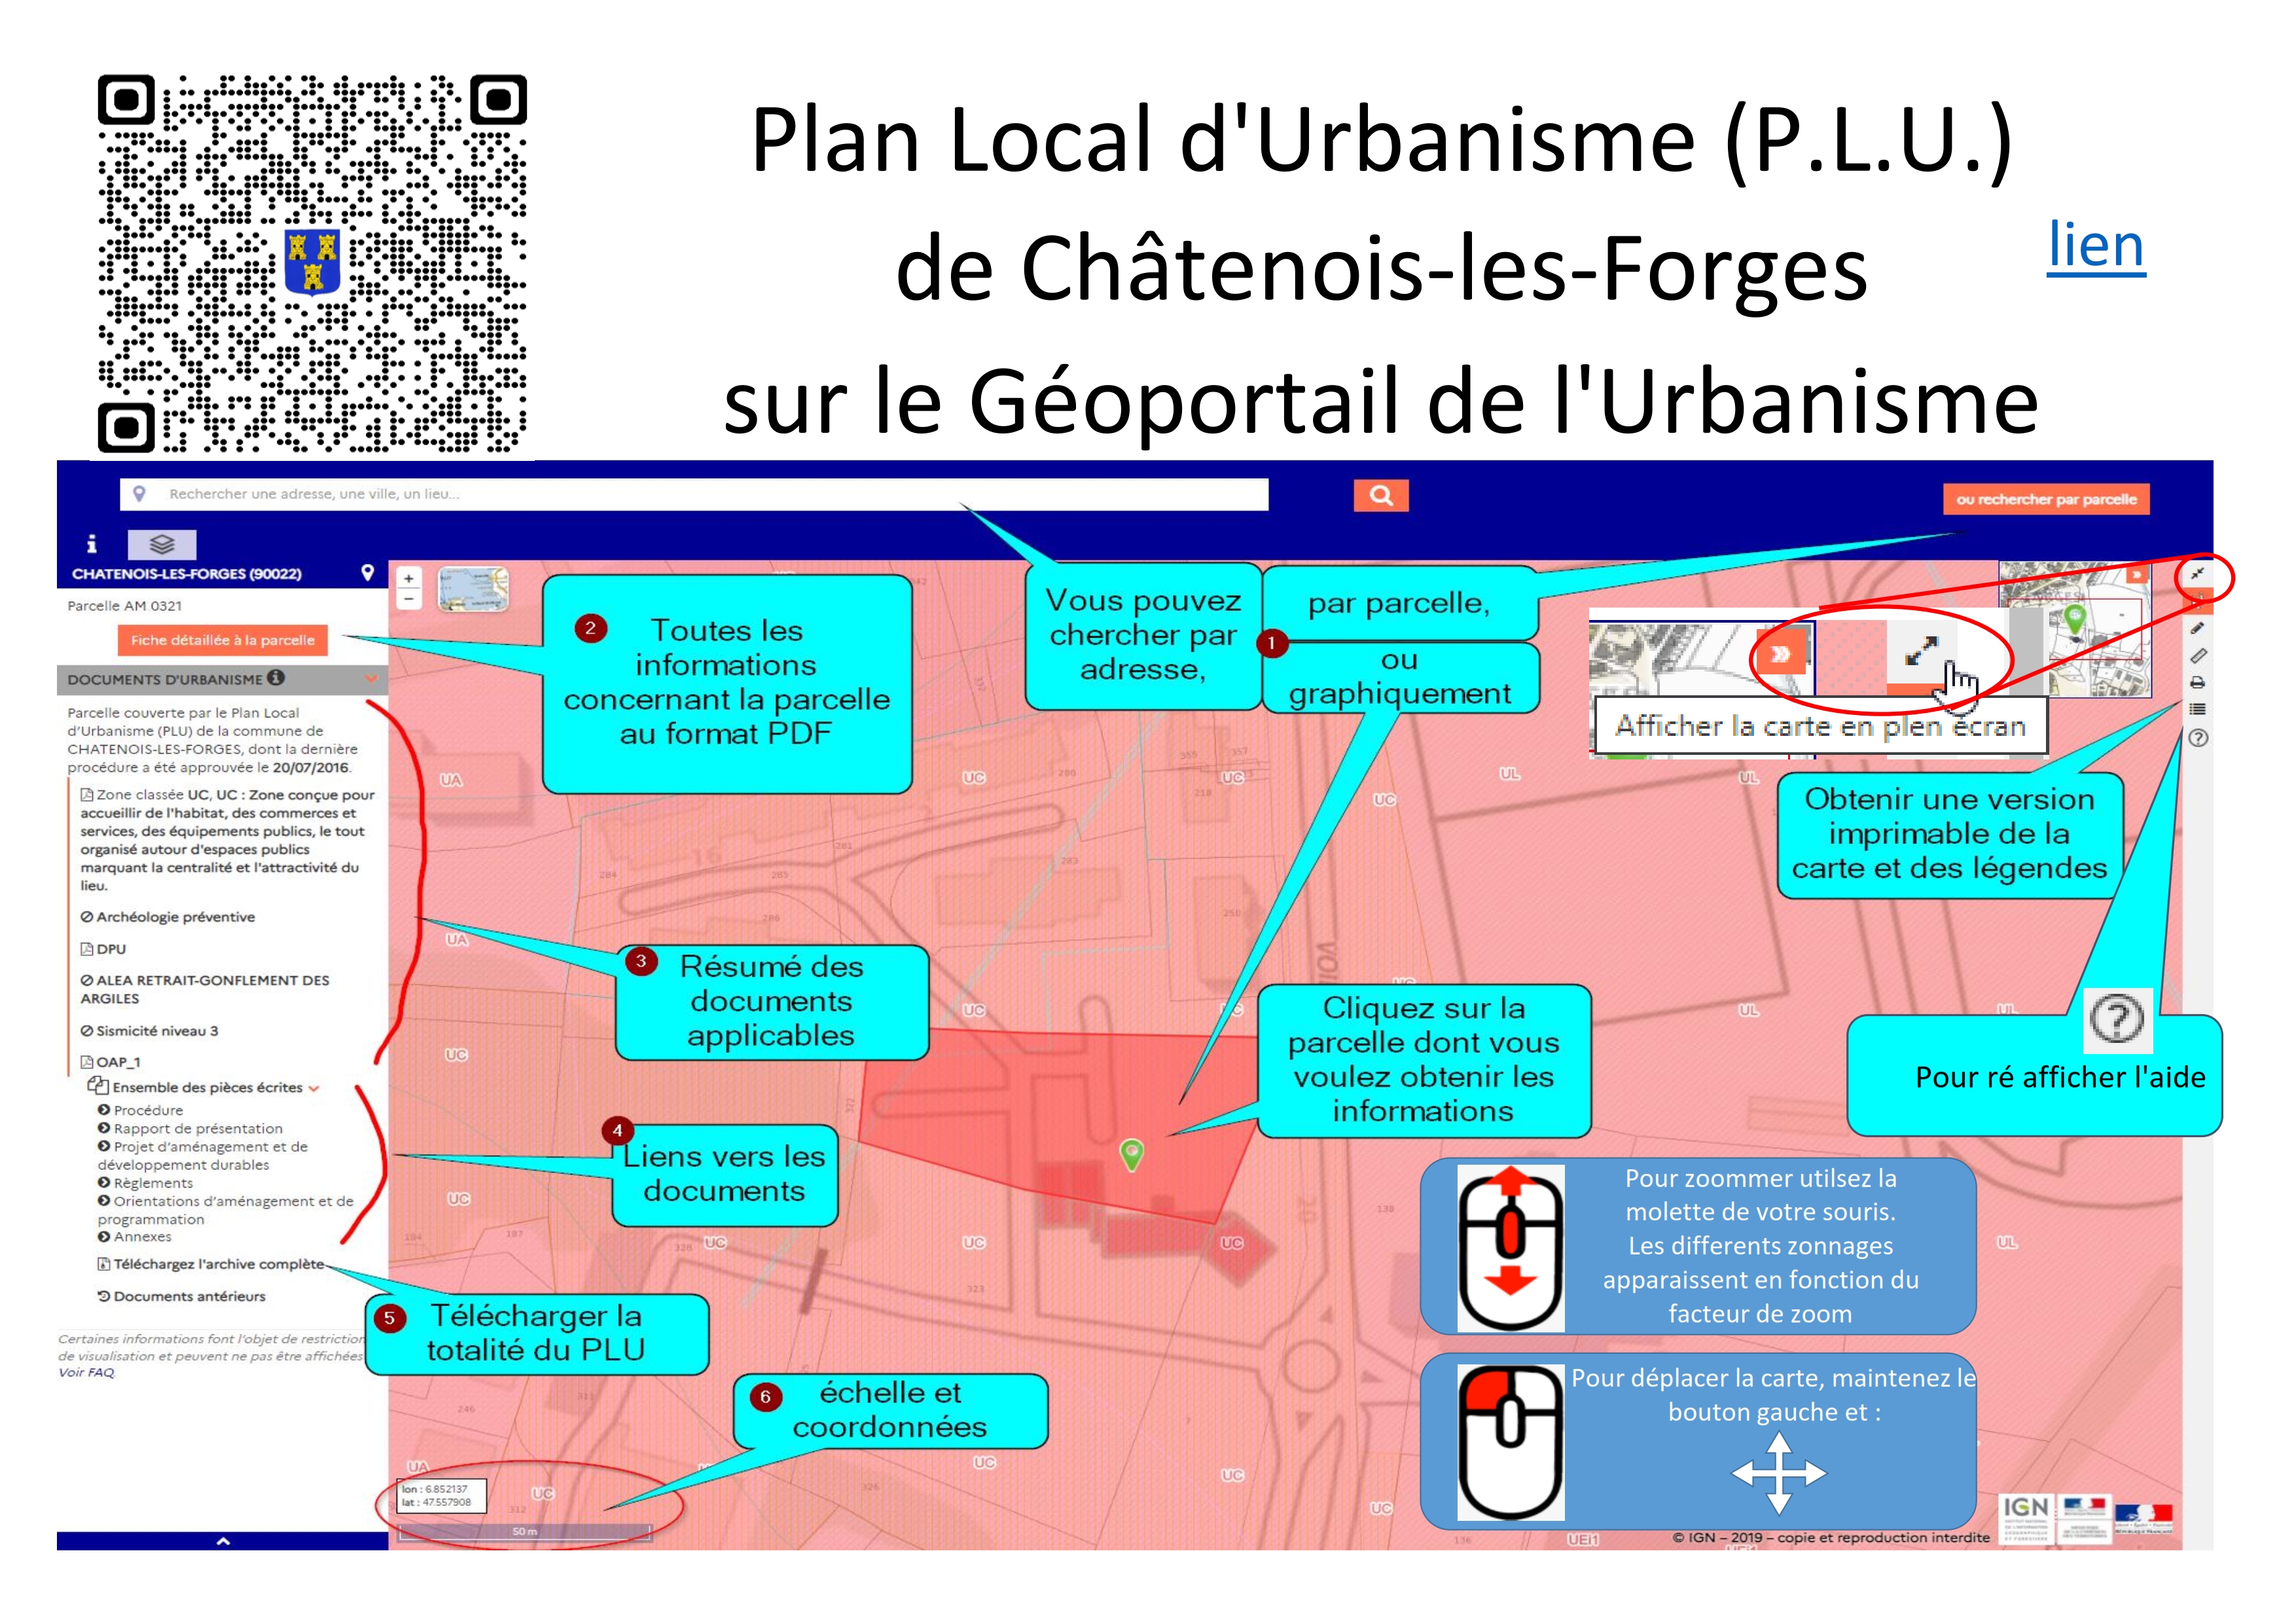 Accèder au Plan Local d_Urbanisme de Chatenois-les-Forges _001.jpg